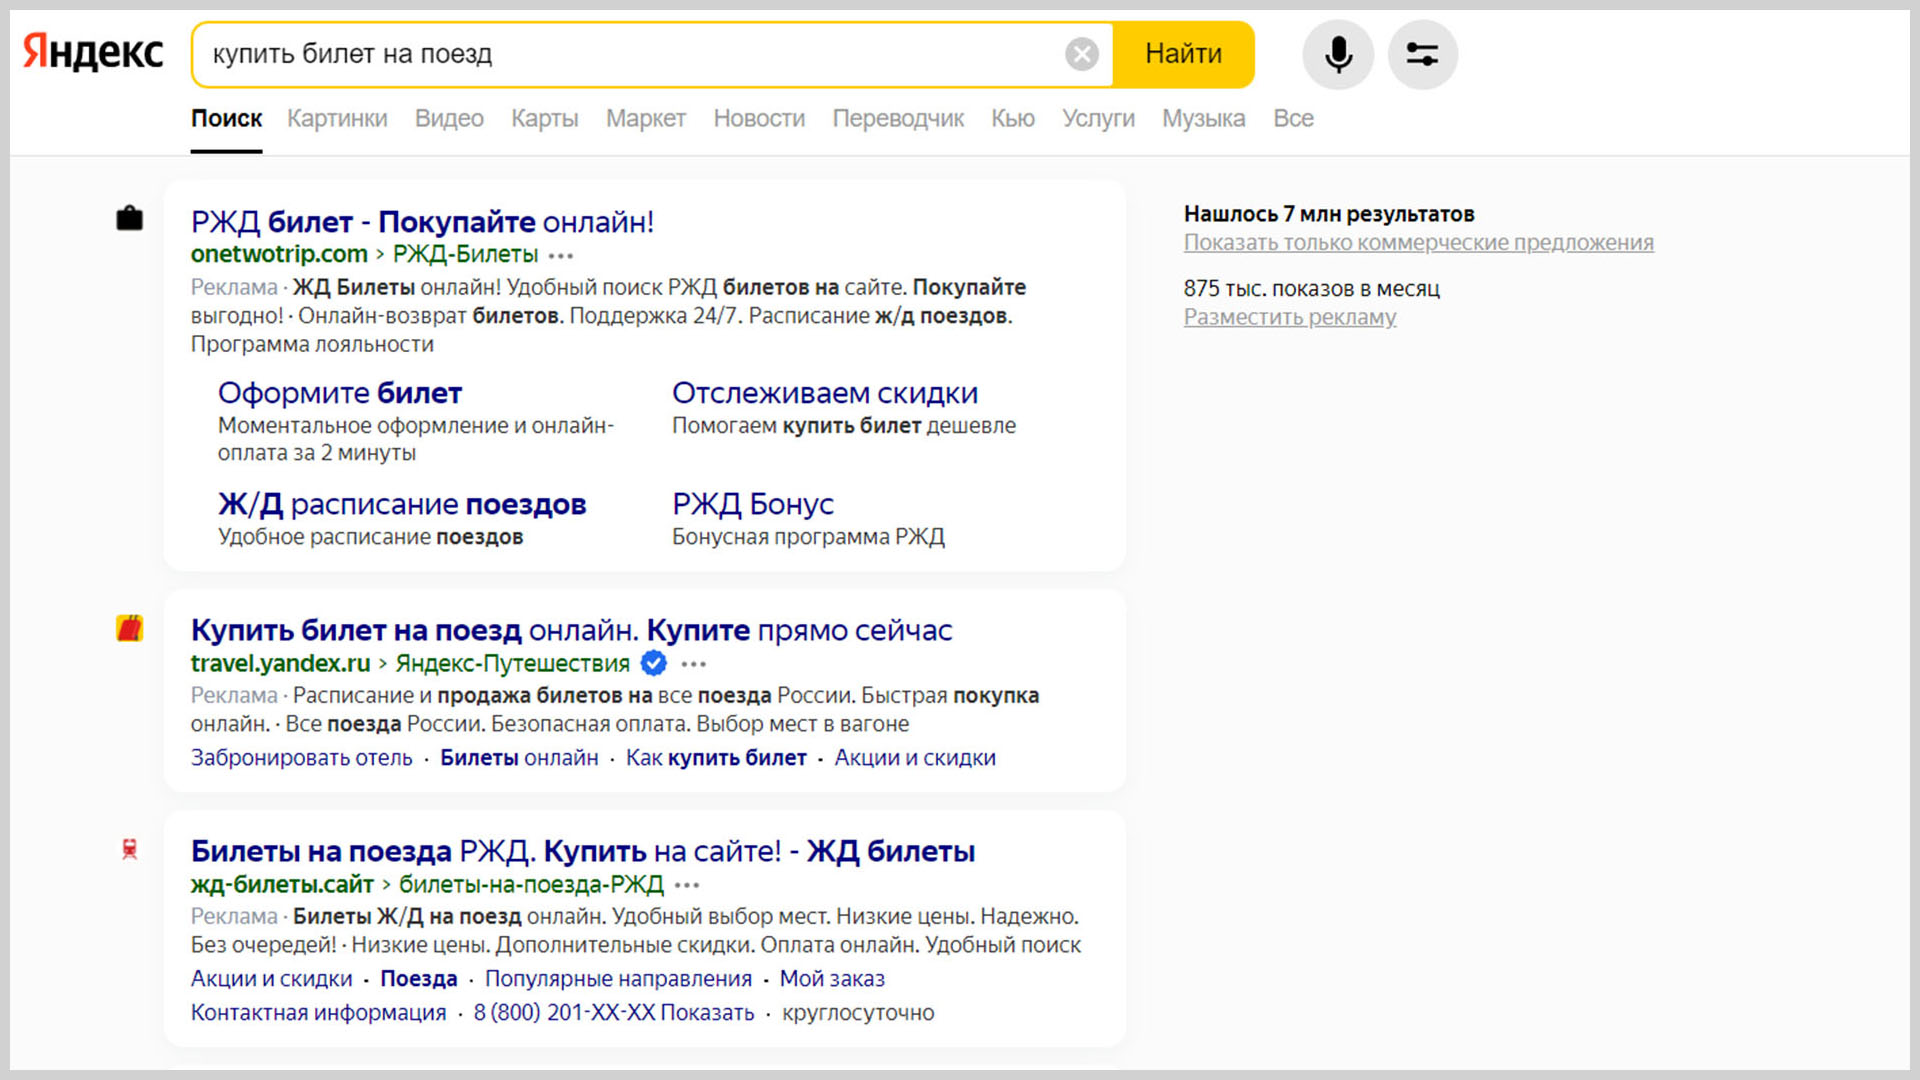 Скриншот страницы поисковой выдачи «Яндекса» по запросу «купить билет на поезд».